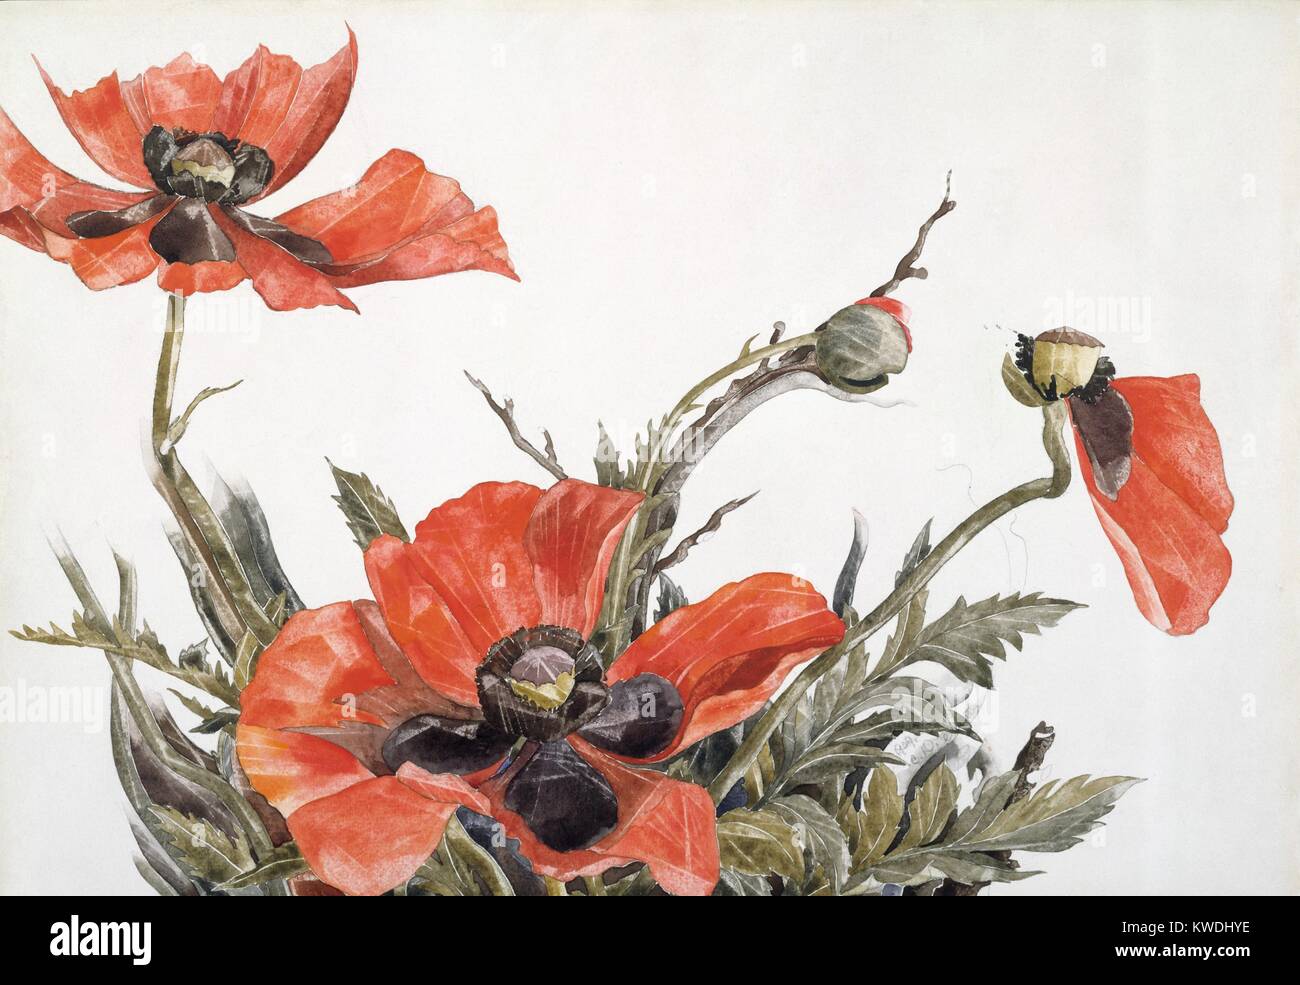 Les coquelicots rouges, par Charles Demuth, 1929, American peinture, aquarelle, et graphite sur carton. Les coquelicots présentent les différents cycles de vie des fleurs : ouverture, en herbe, en fleurs, et en décomposition. L'artiste a utilisé un proche en portrait (BSLOC 2017 7 98) Banque D'Images